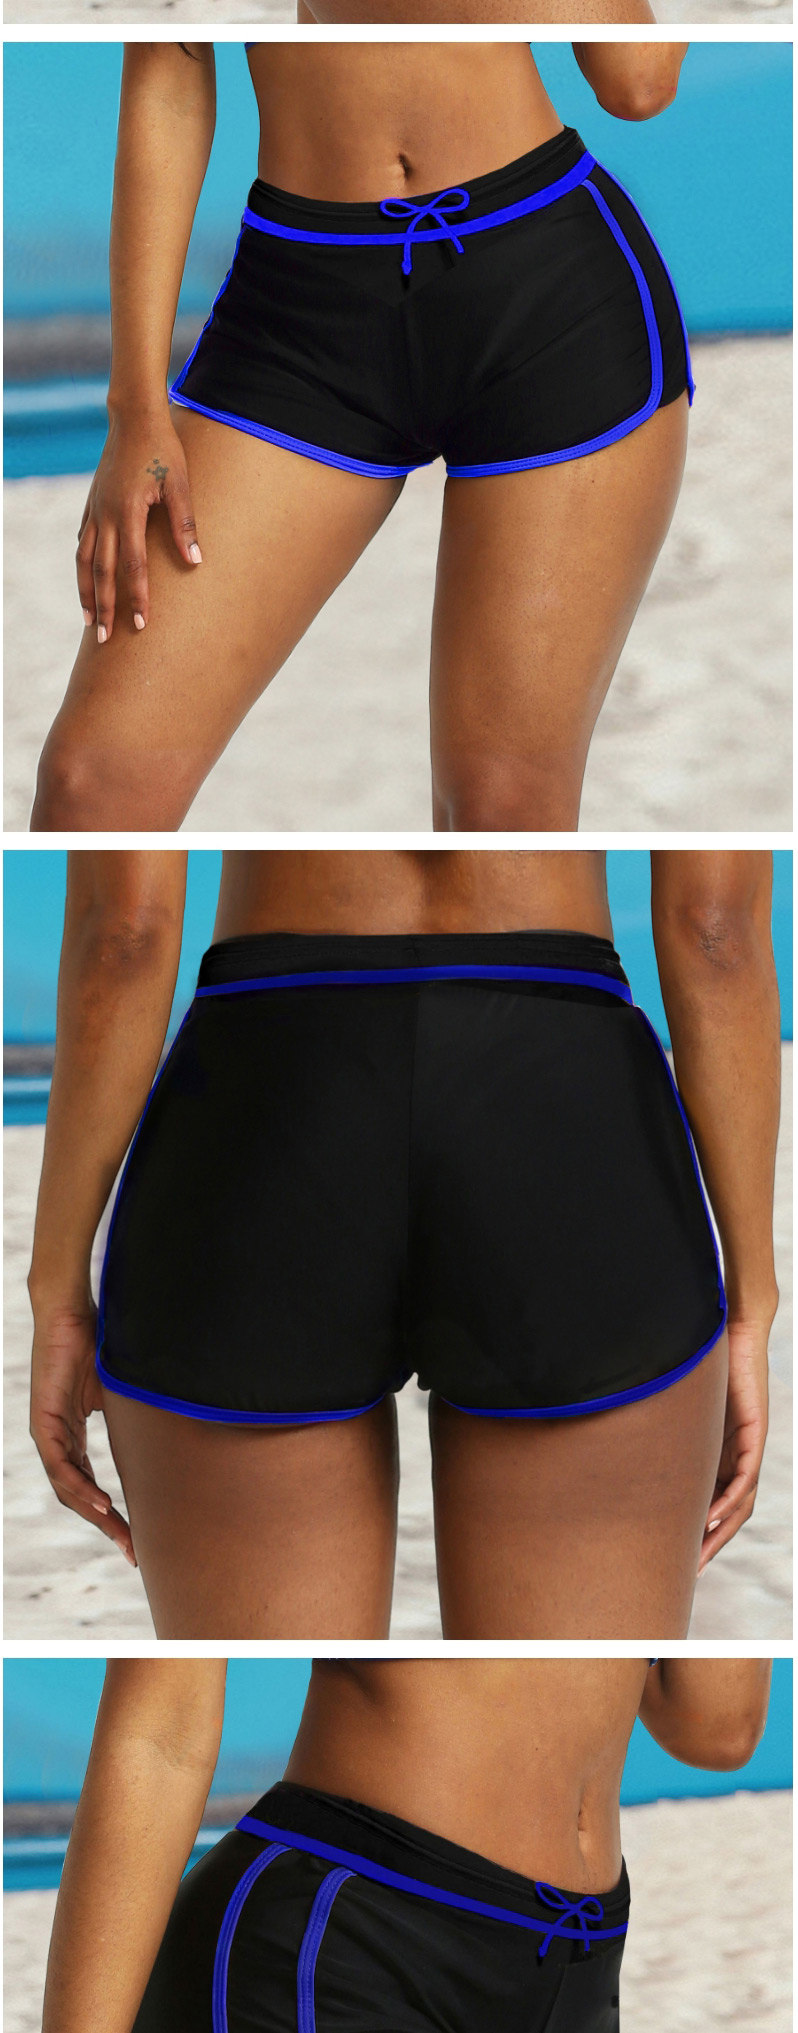 Fashion Blue Skinny Lace-up Short Swim Trunks,Shorts